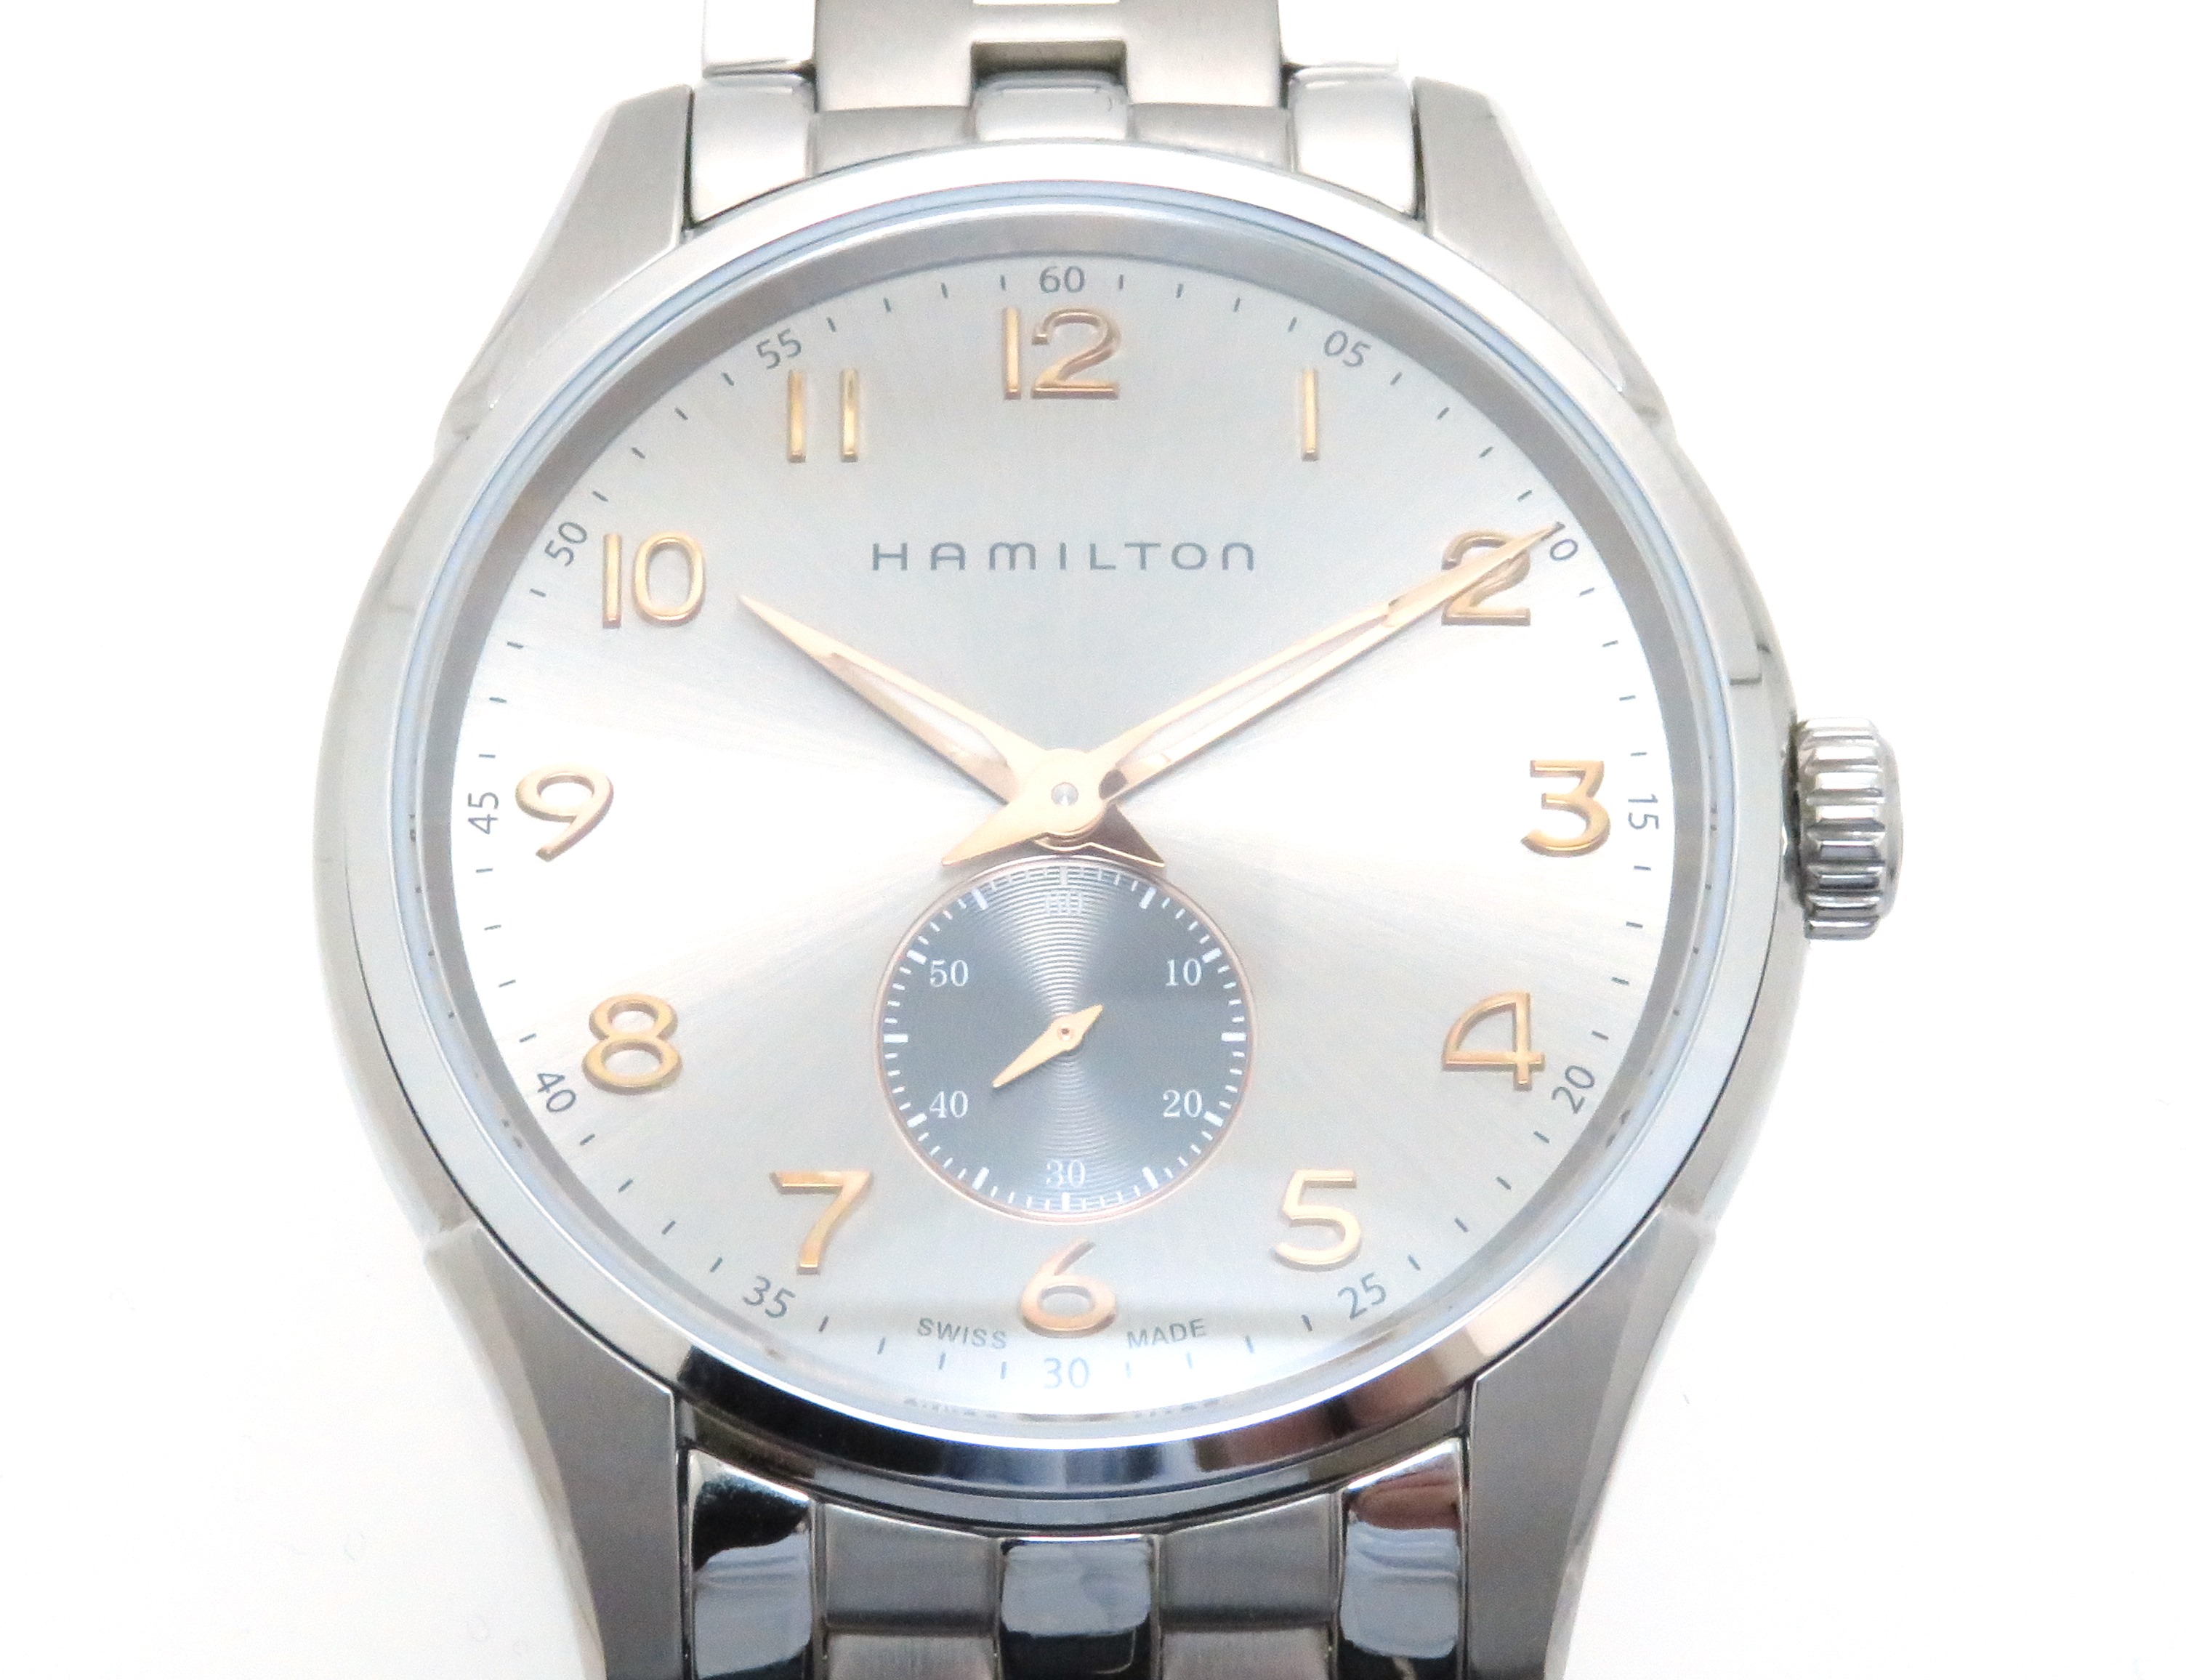 HAMILTON　ハミルトン　ジャズマスター シンライン　H384110　ステンレススチール　クオーツ　メンズ腕時計　【432】